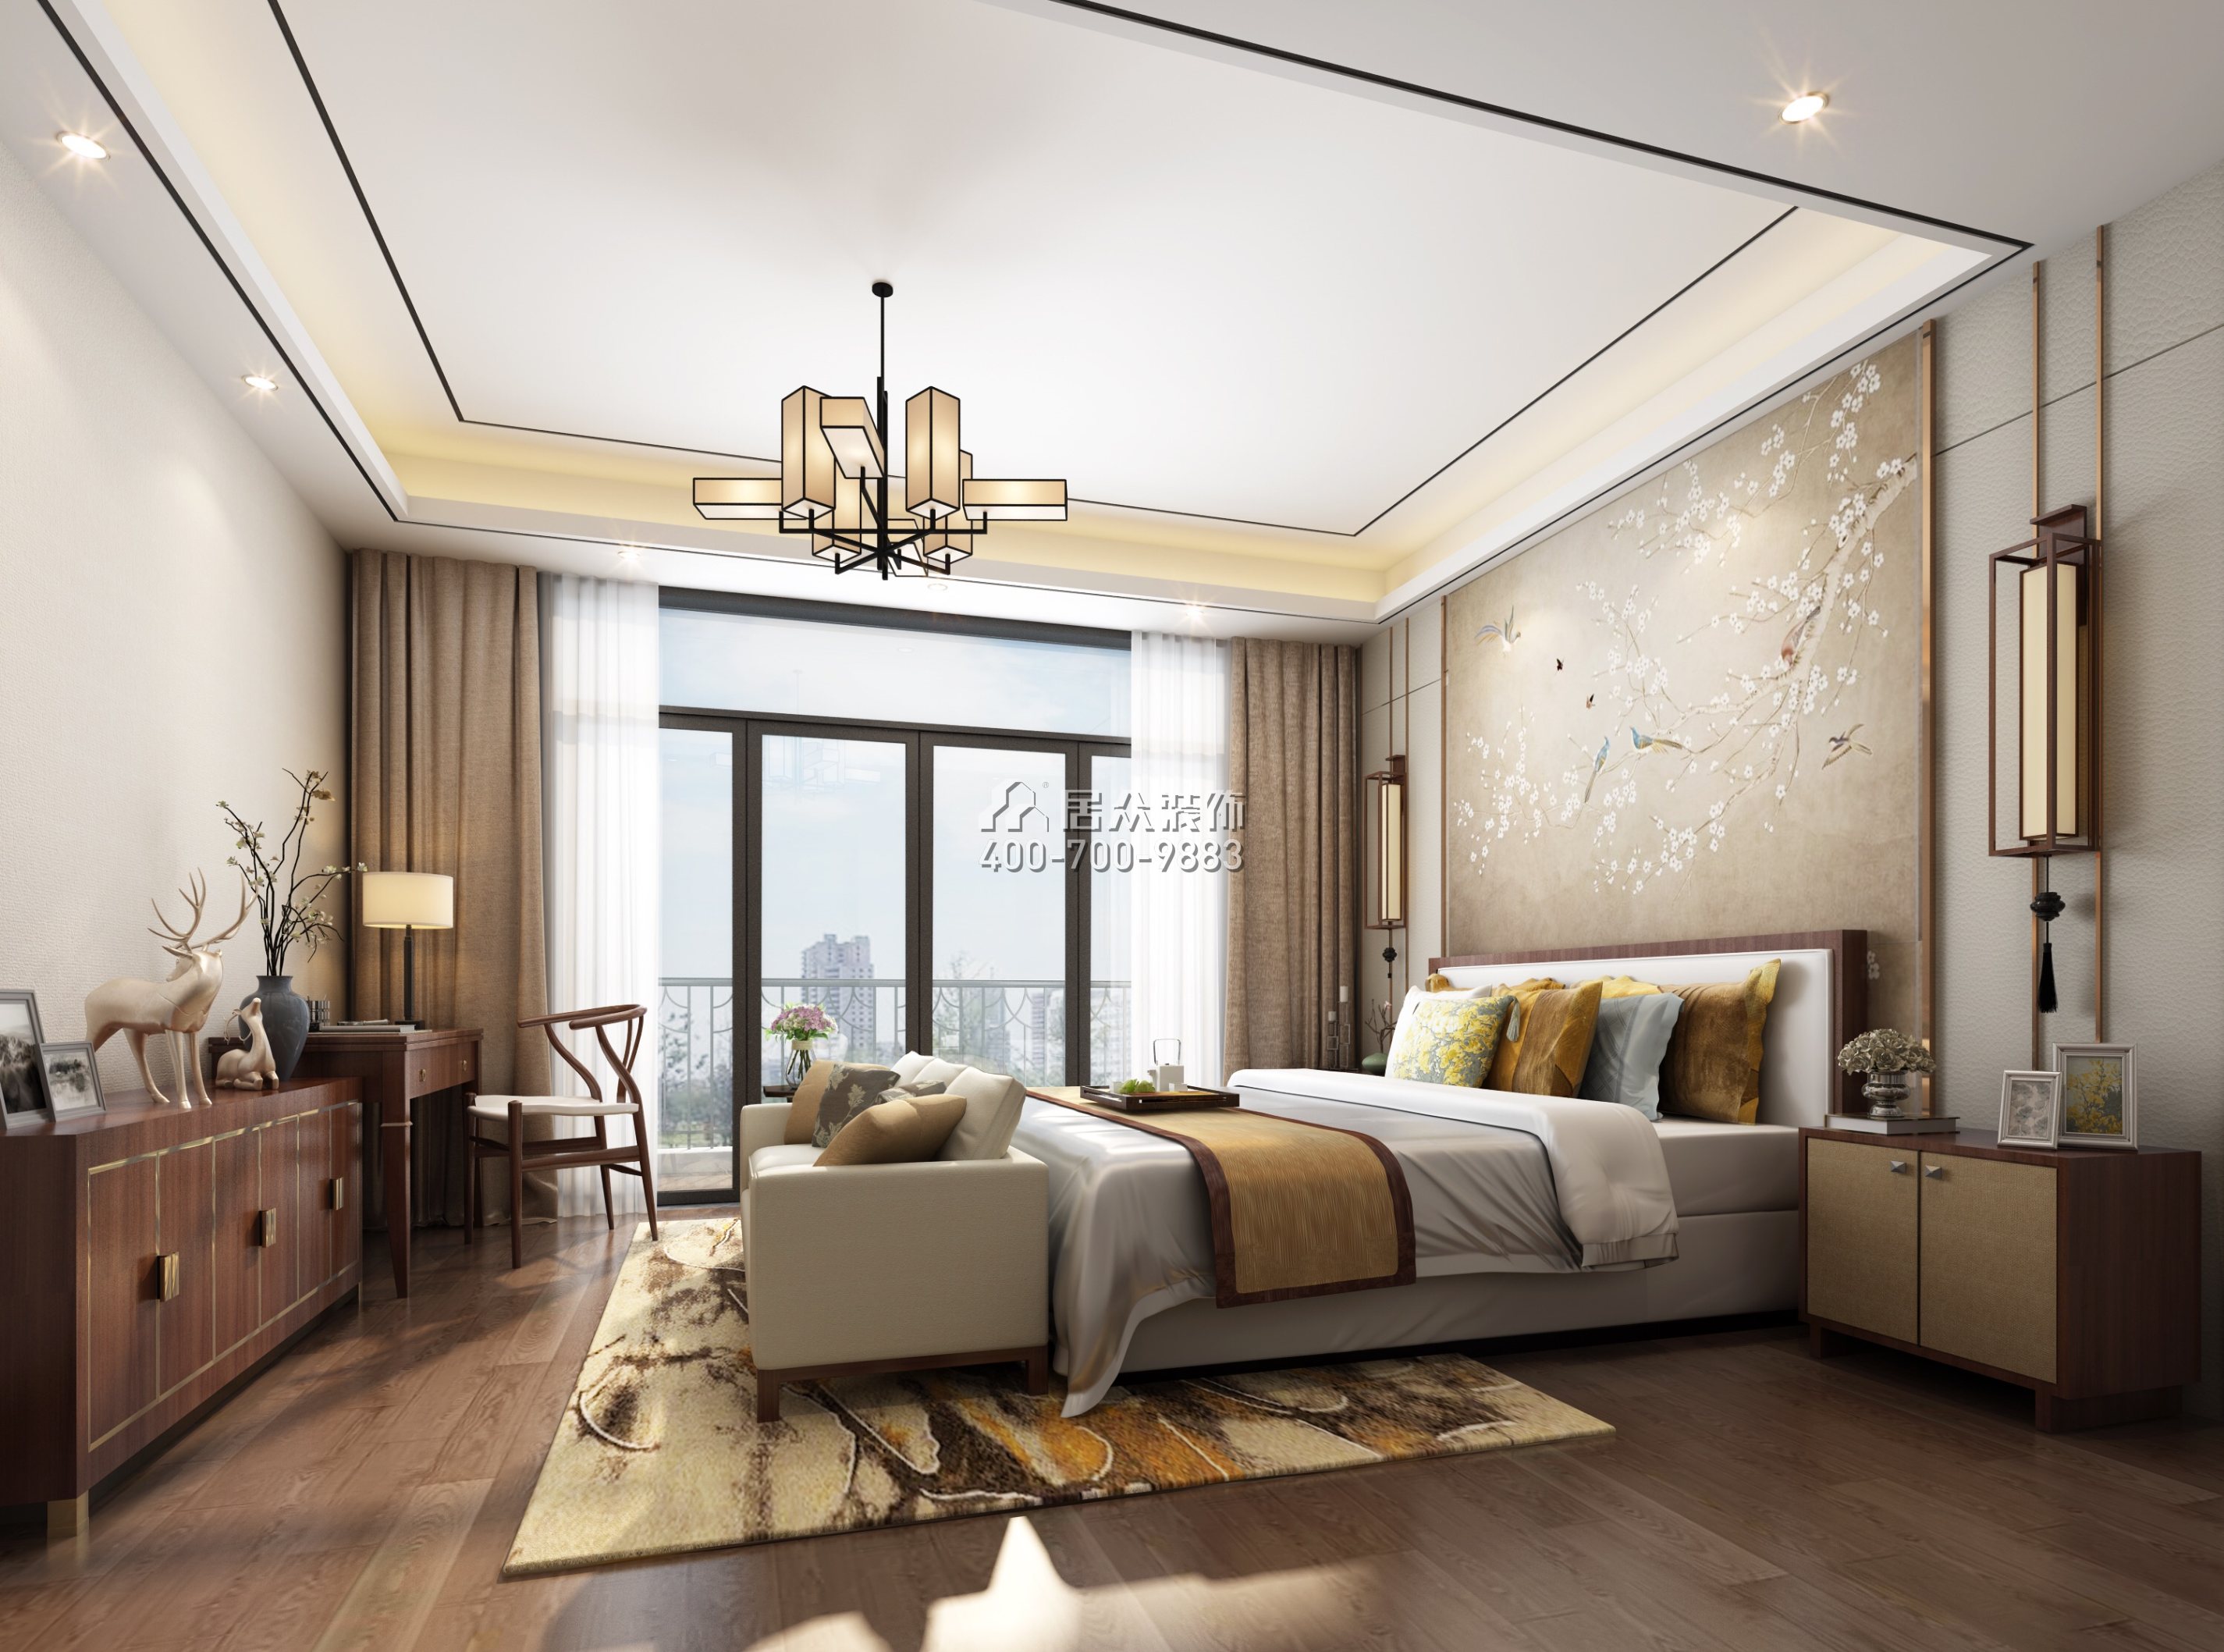 海逸豪庭177平方米中式風格復式戶型臥室裝修效果圖